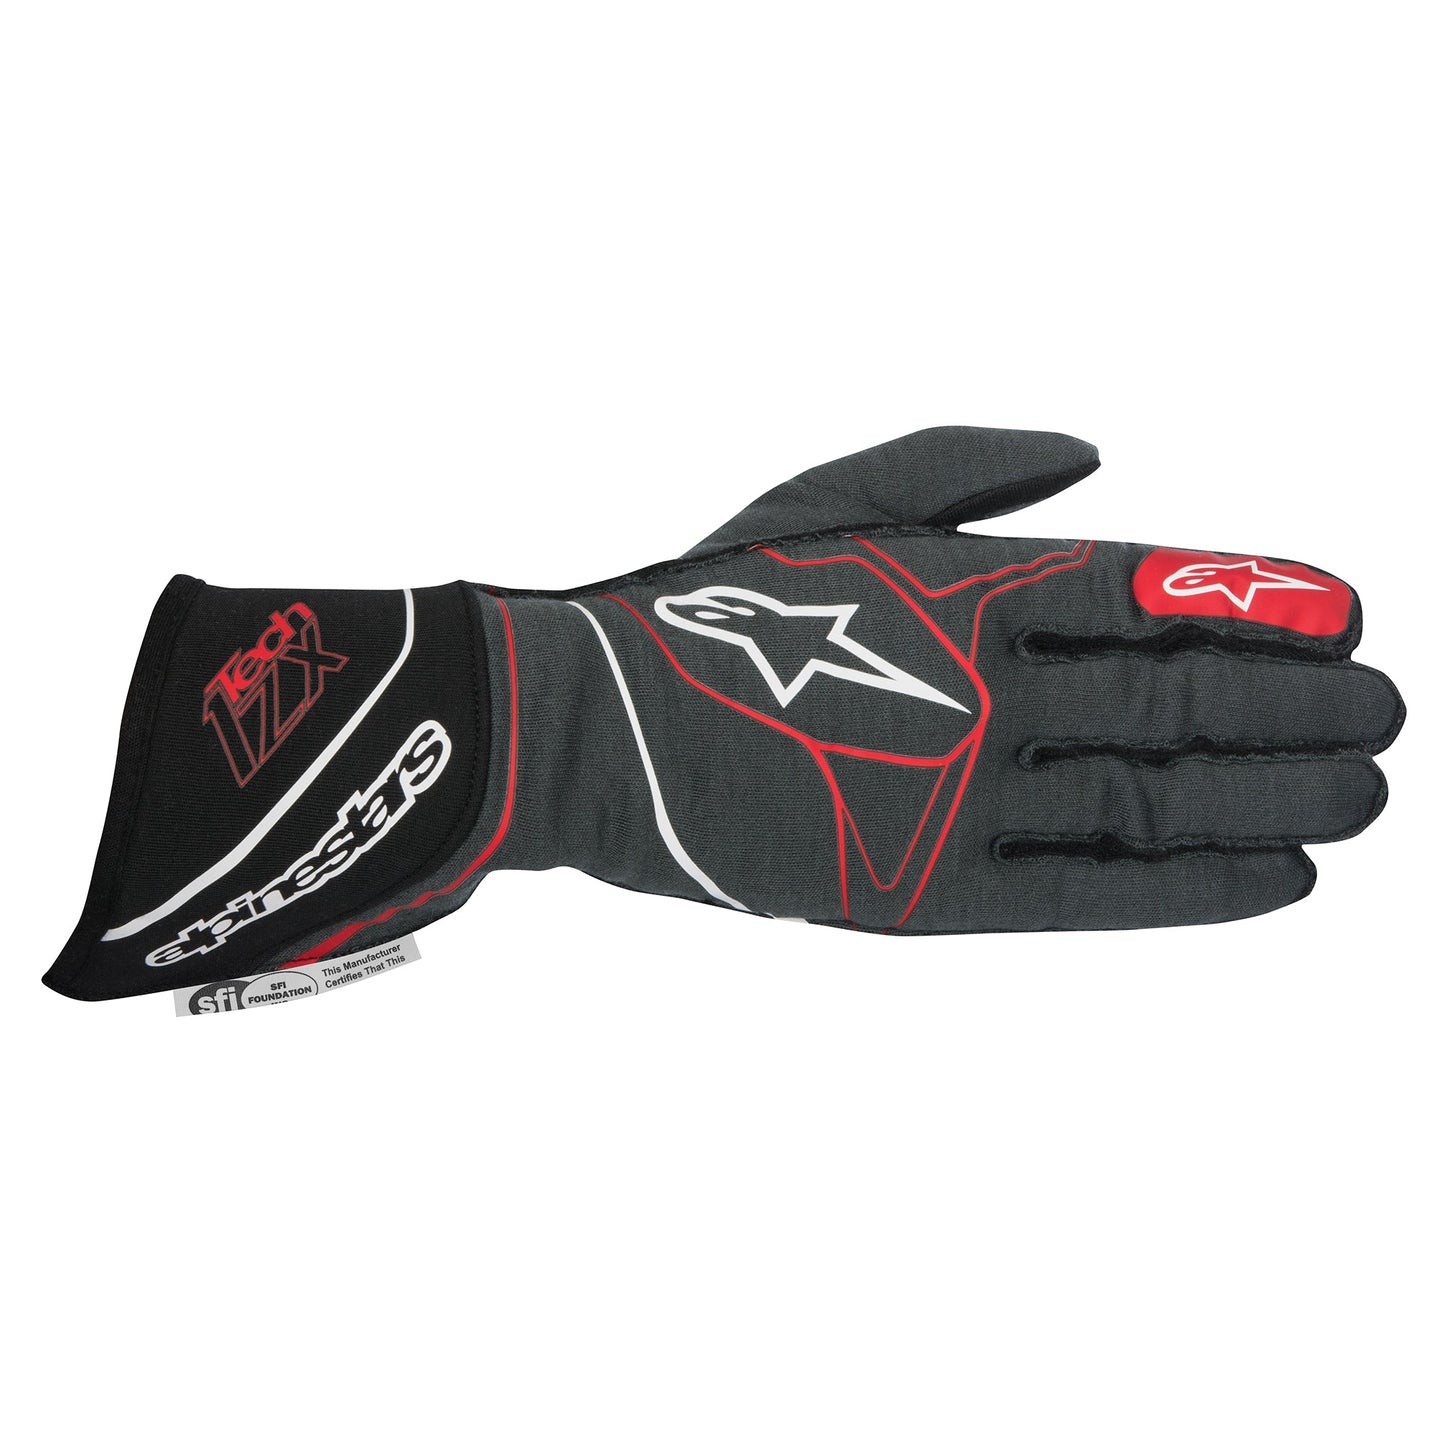 Alpinestars Tech-1 ZX Gloves